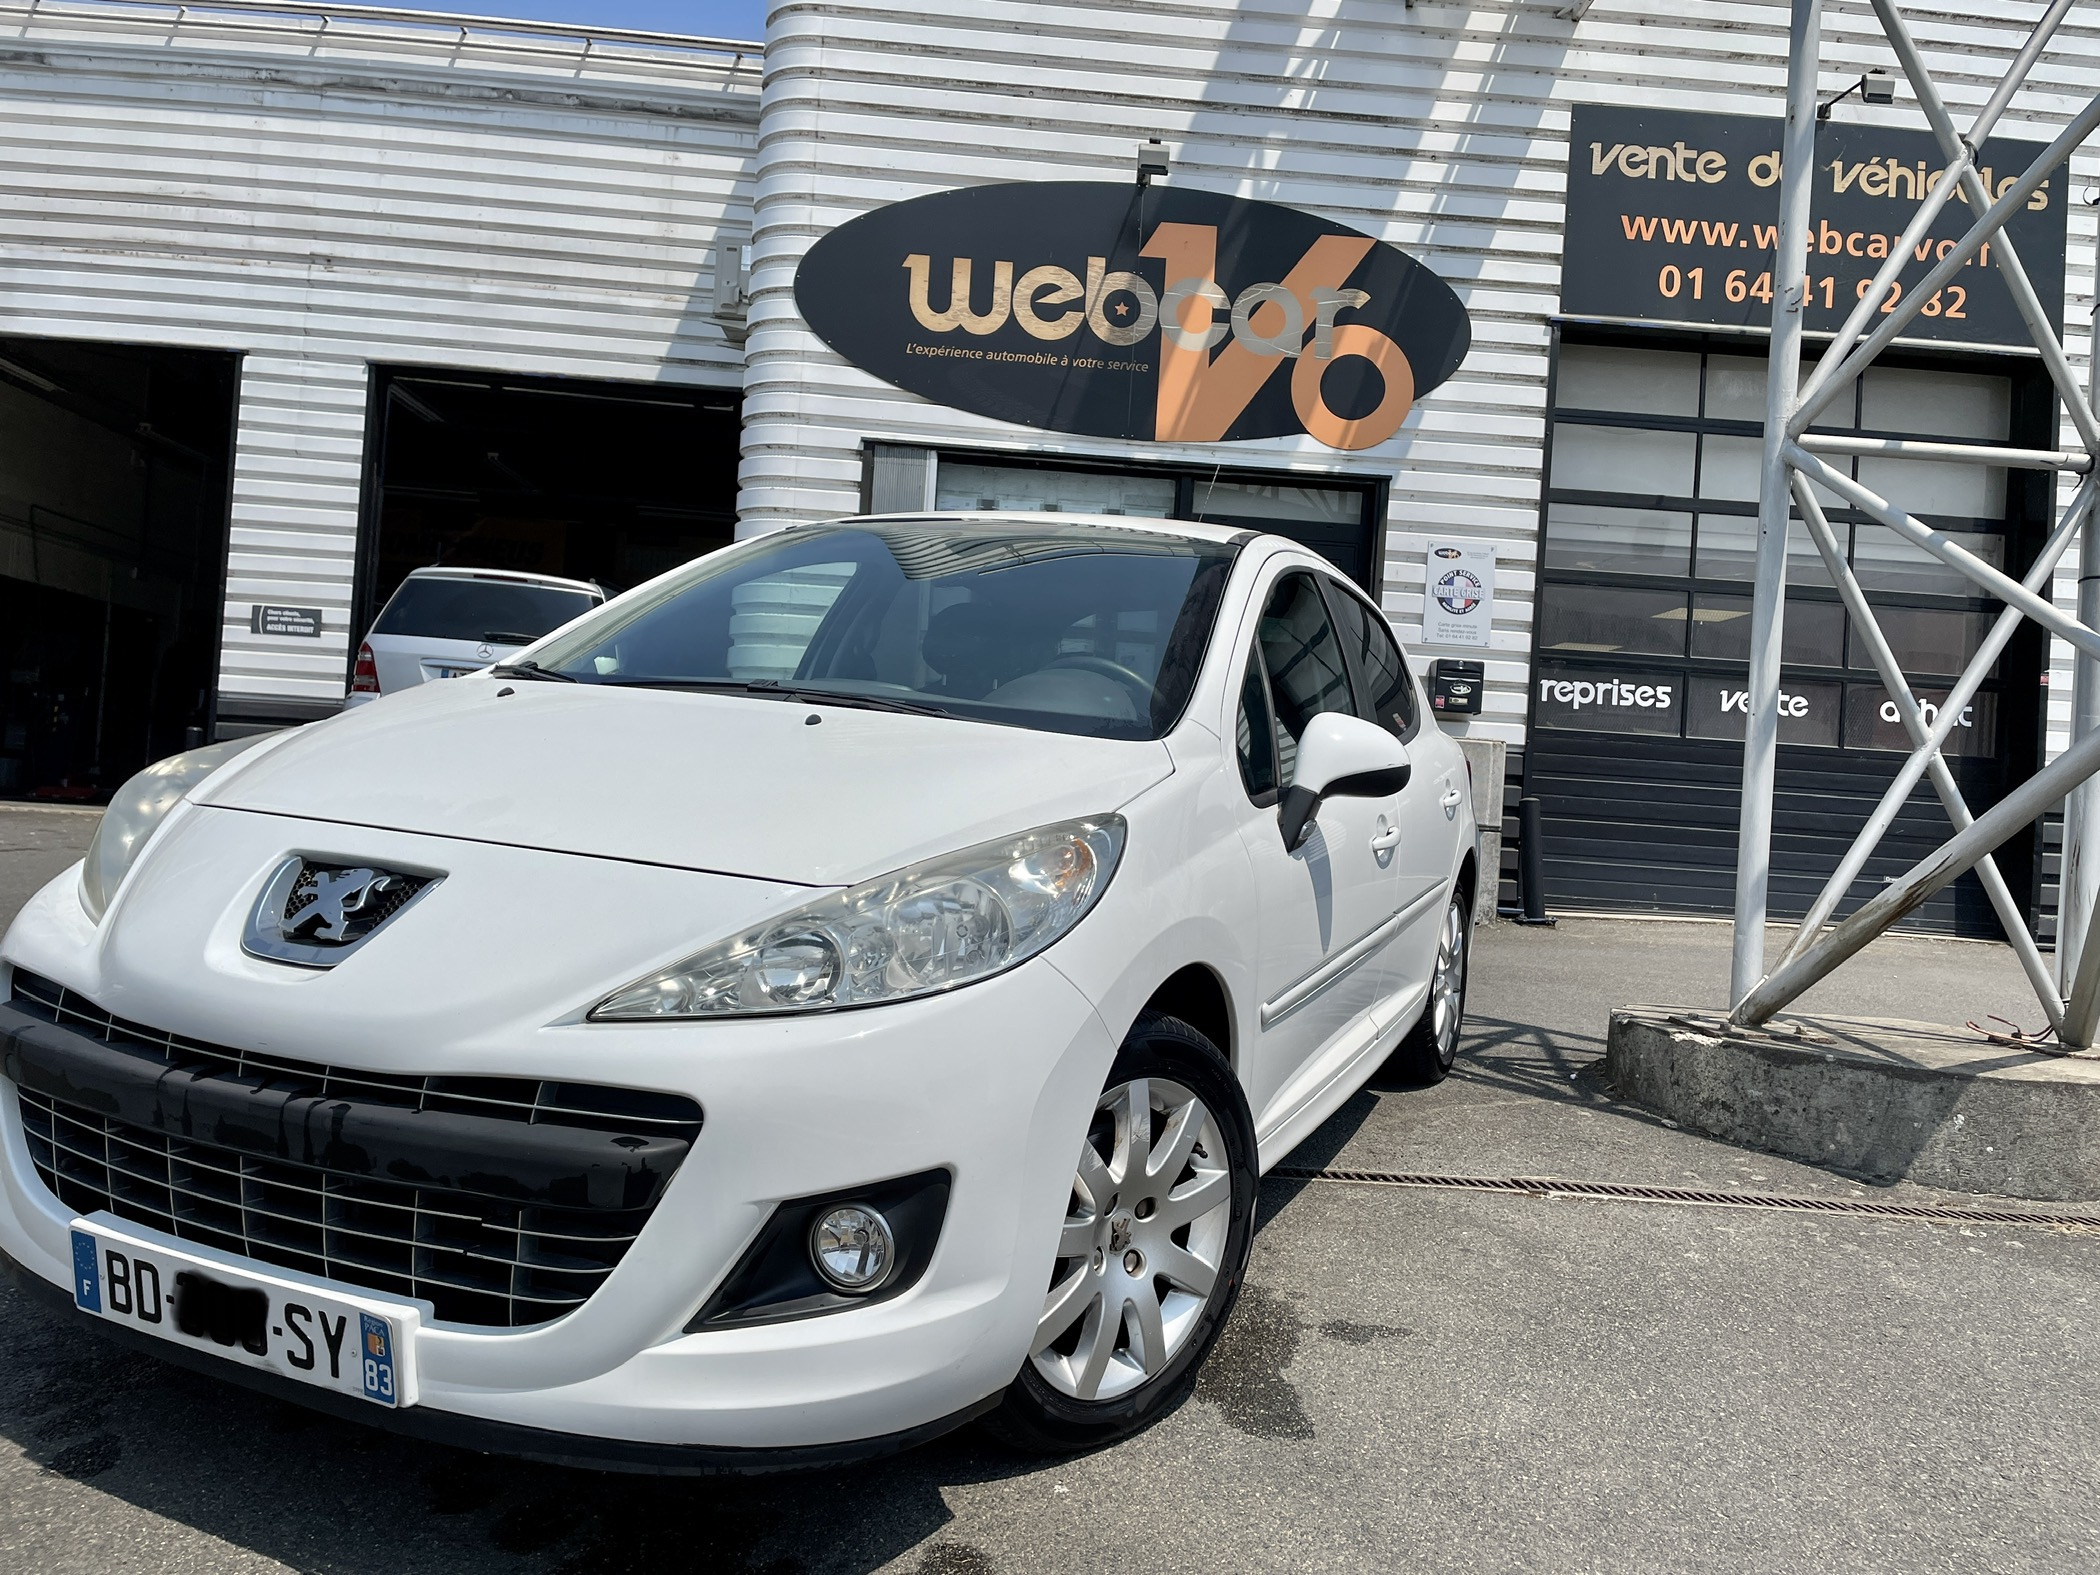 PEUGEOT 207 phase 2 1.6 VTI 120 SPORTIUM  Achat et vente de voiture  d'occasion – WebCarVo